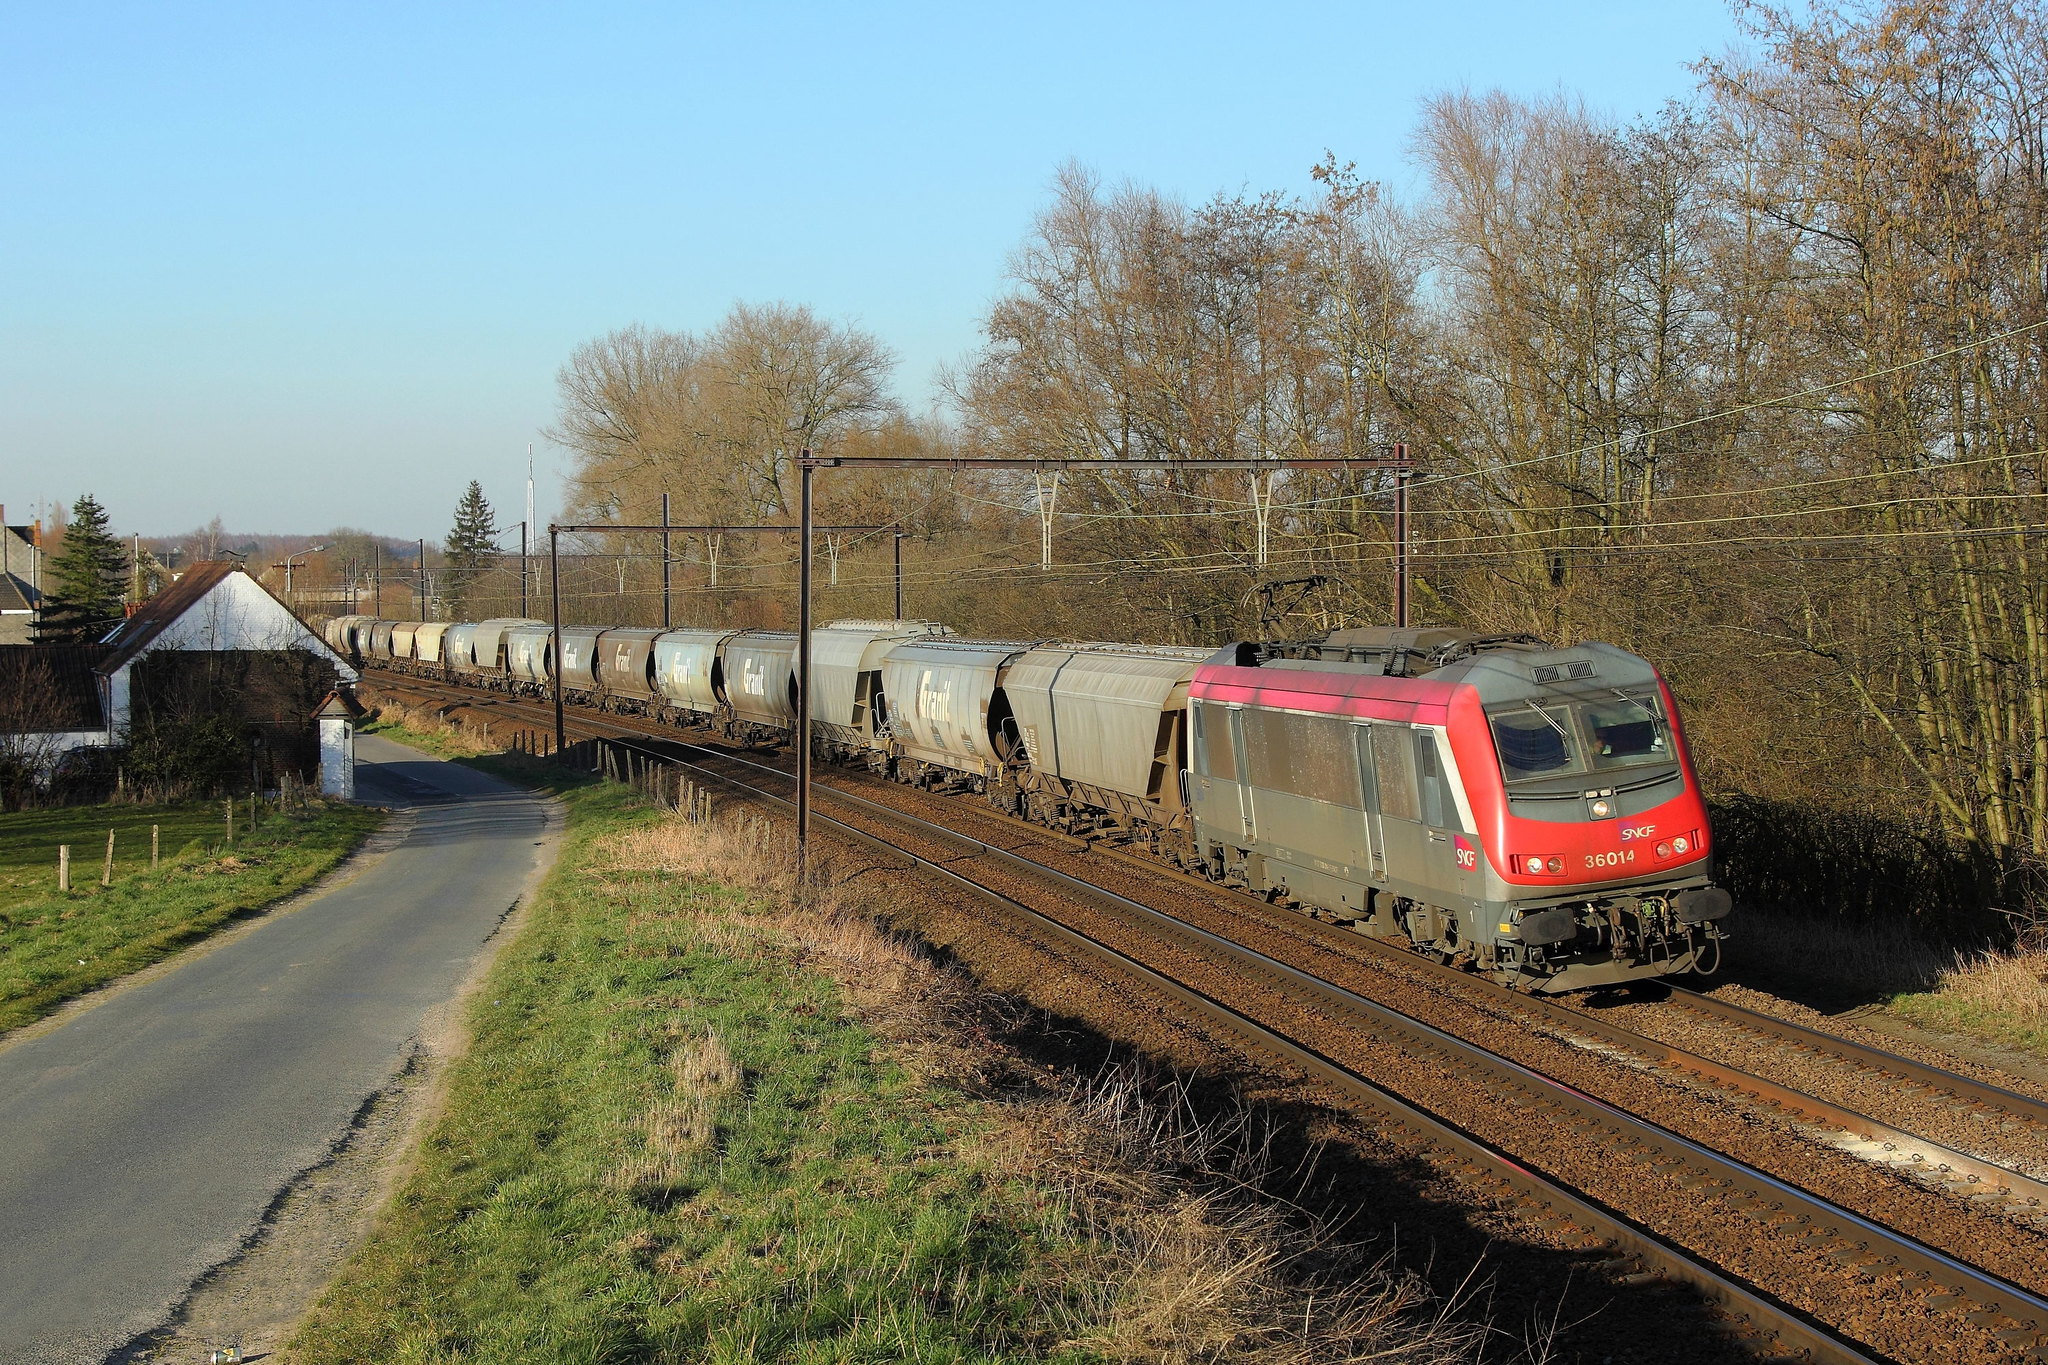 Locomotive électrique BB8500 cabine longue, livrée Fret, SNCF époque V